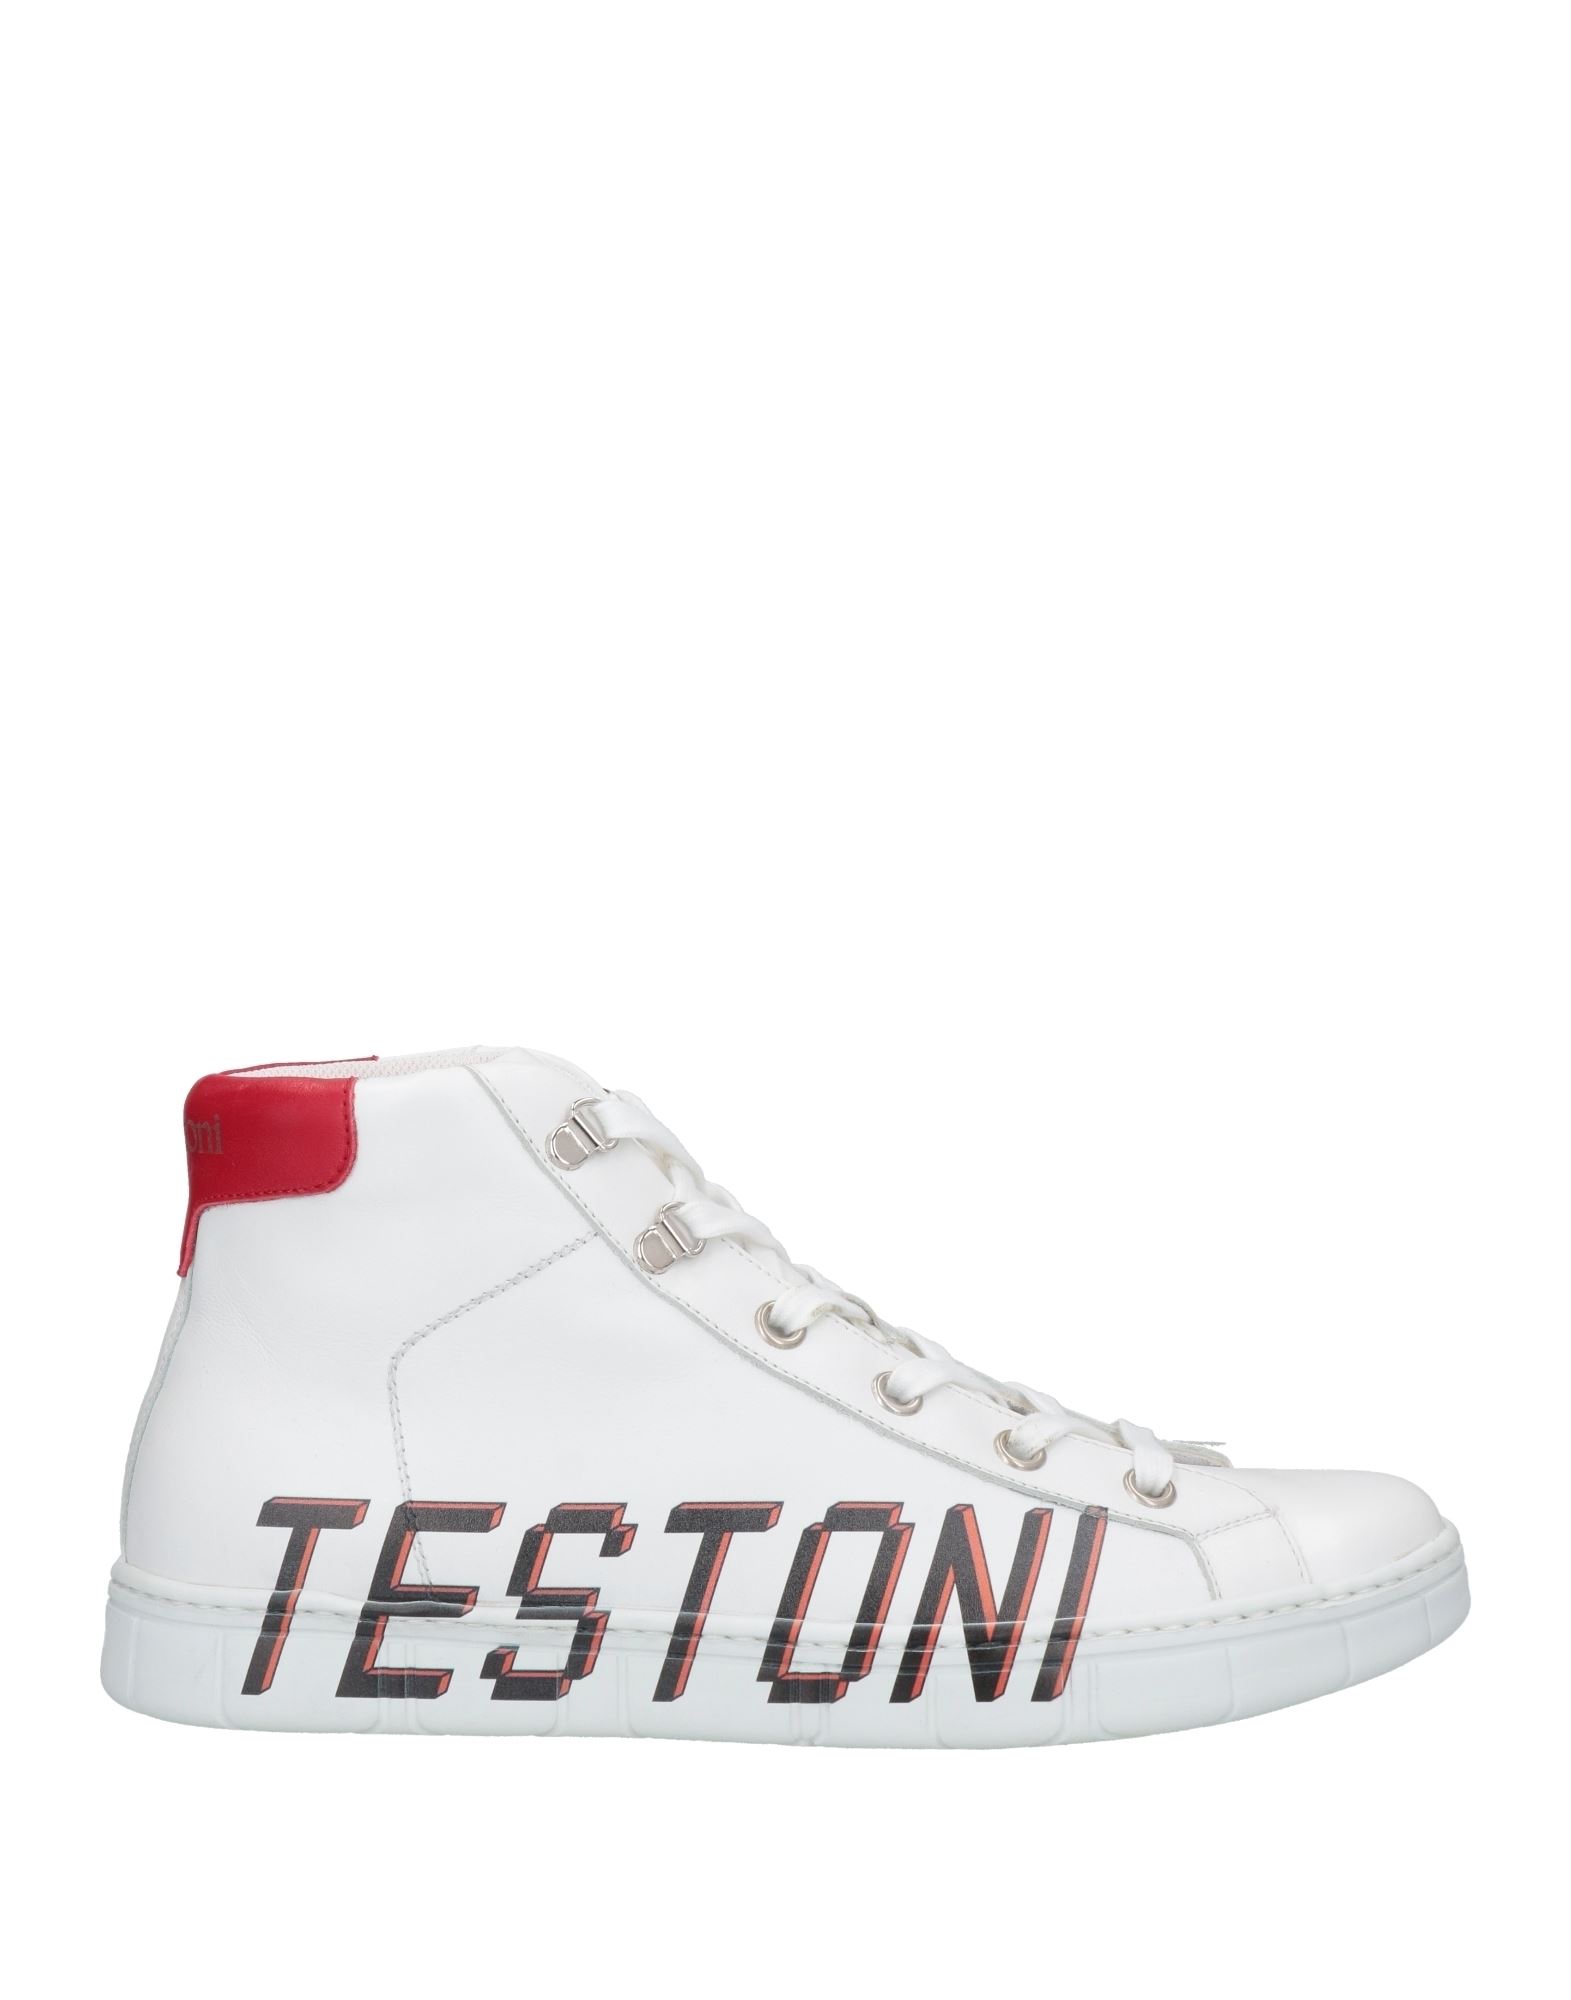 Shop A.testoni A. Testoni Man Sneakers White Size 7 Calfskin